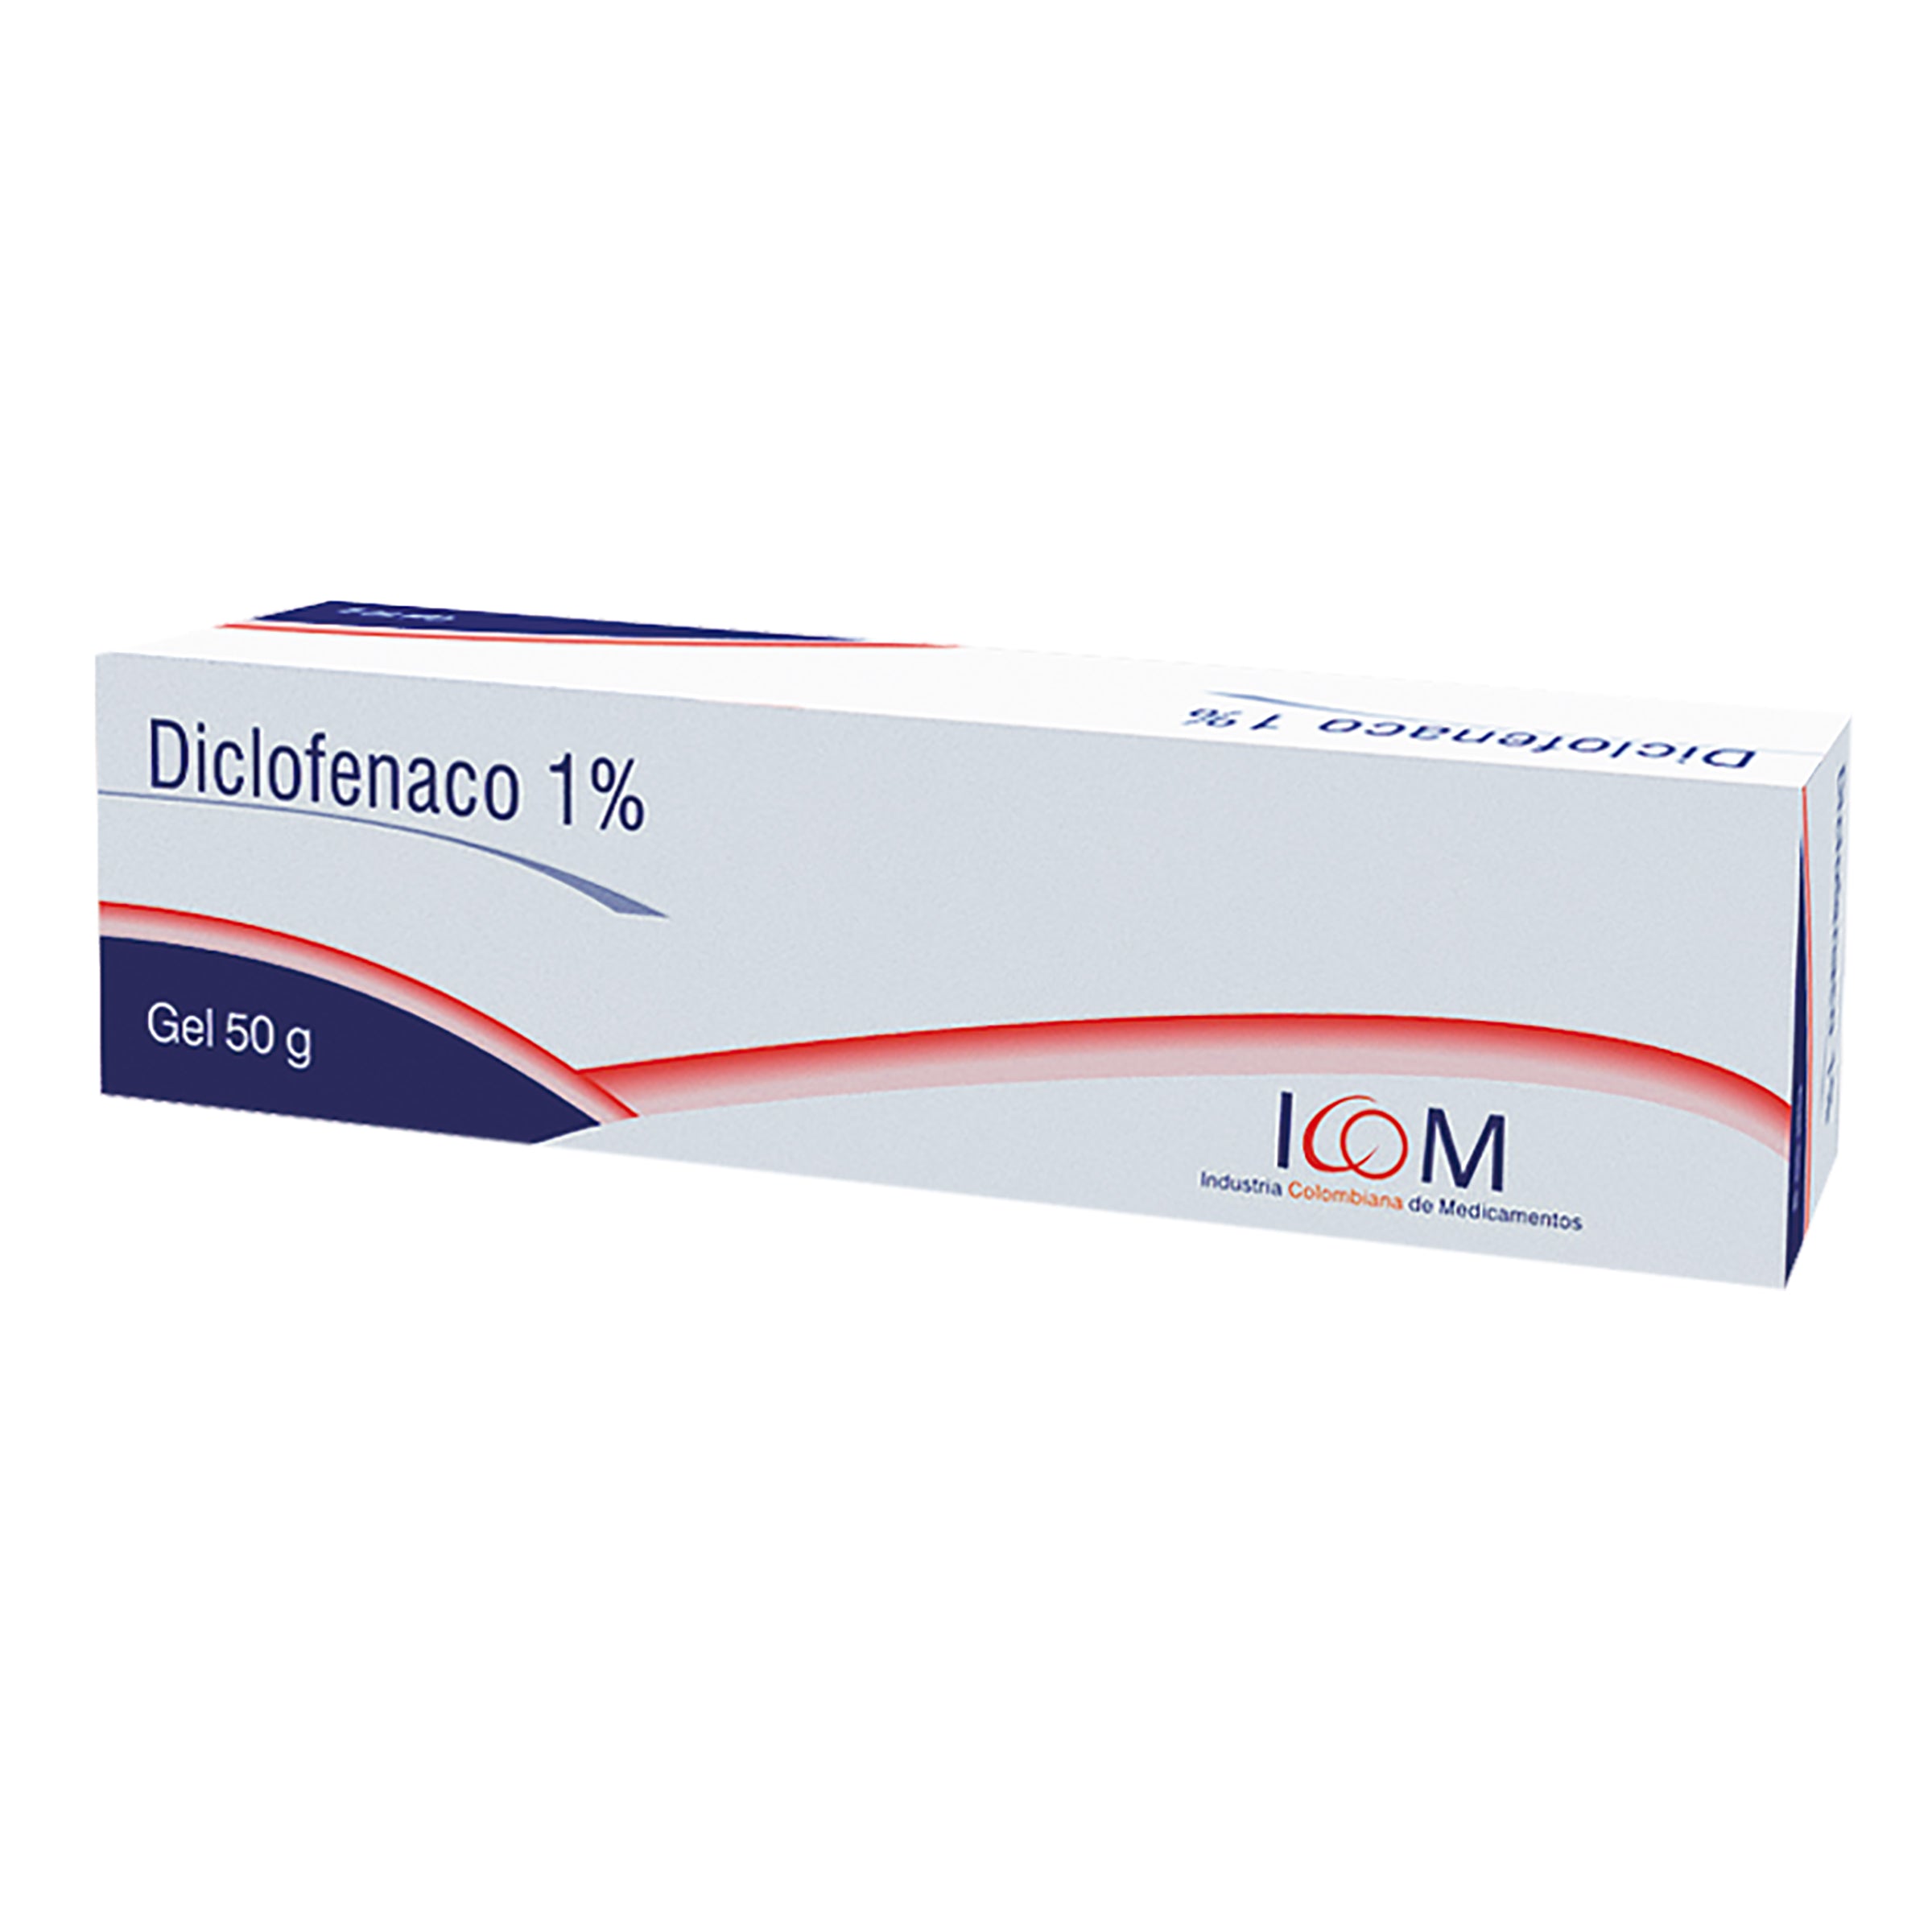 DICLOFENACO 1% GEL 50 GR ICOM